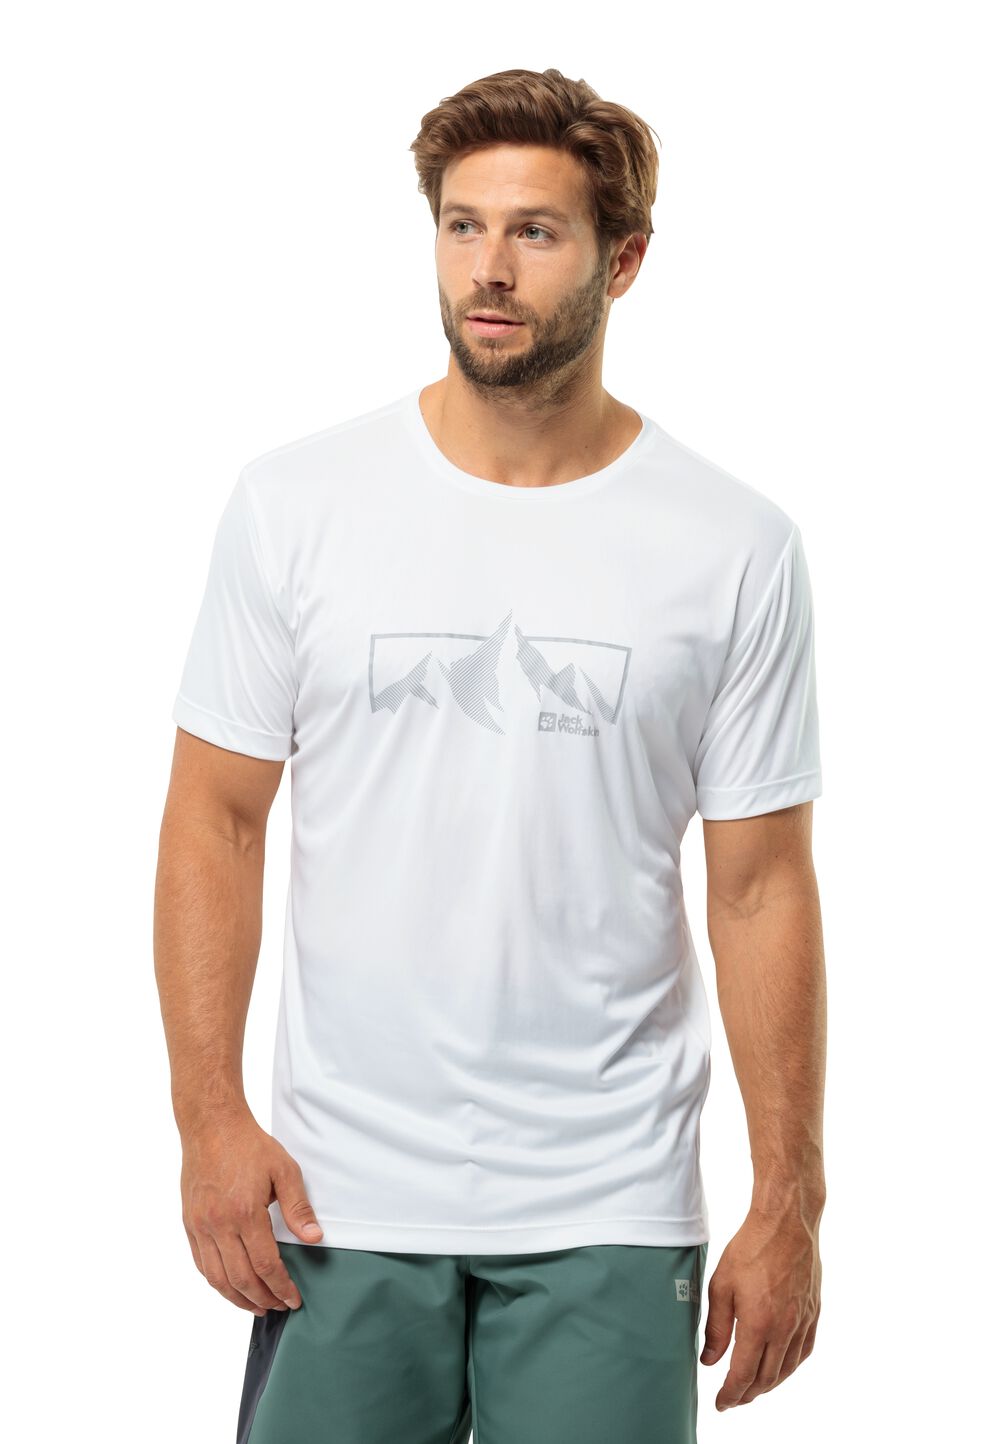 Jack Wolfskin Peak Graphic T-Shirt Men Functioneel shirt Heren L wit stark white